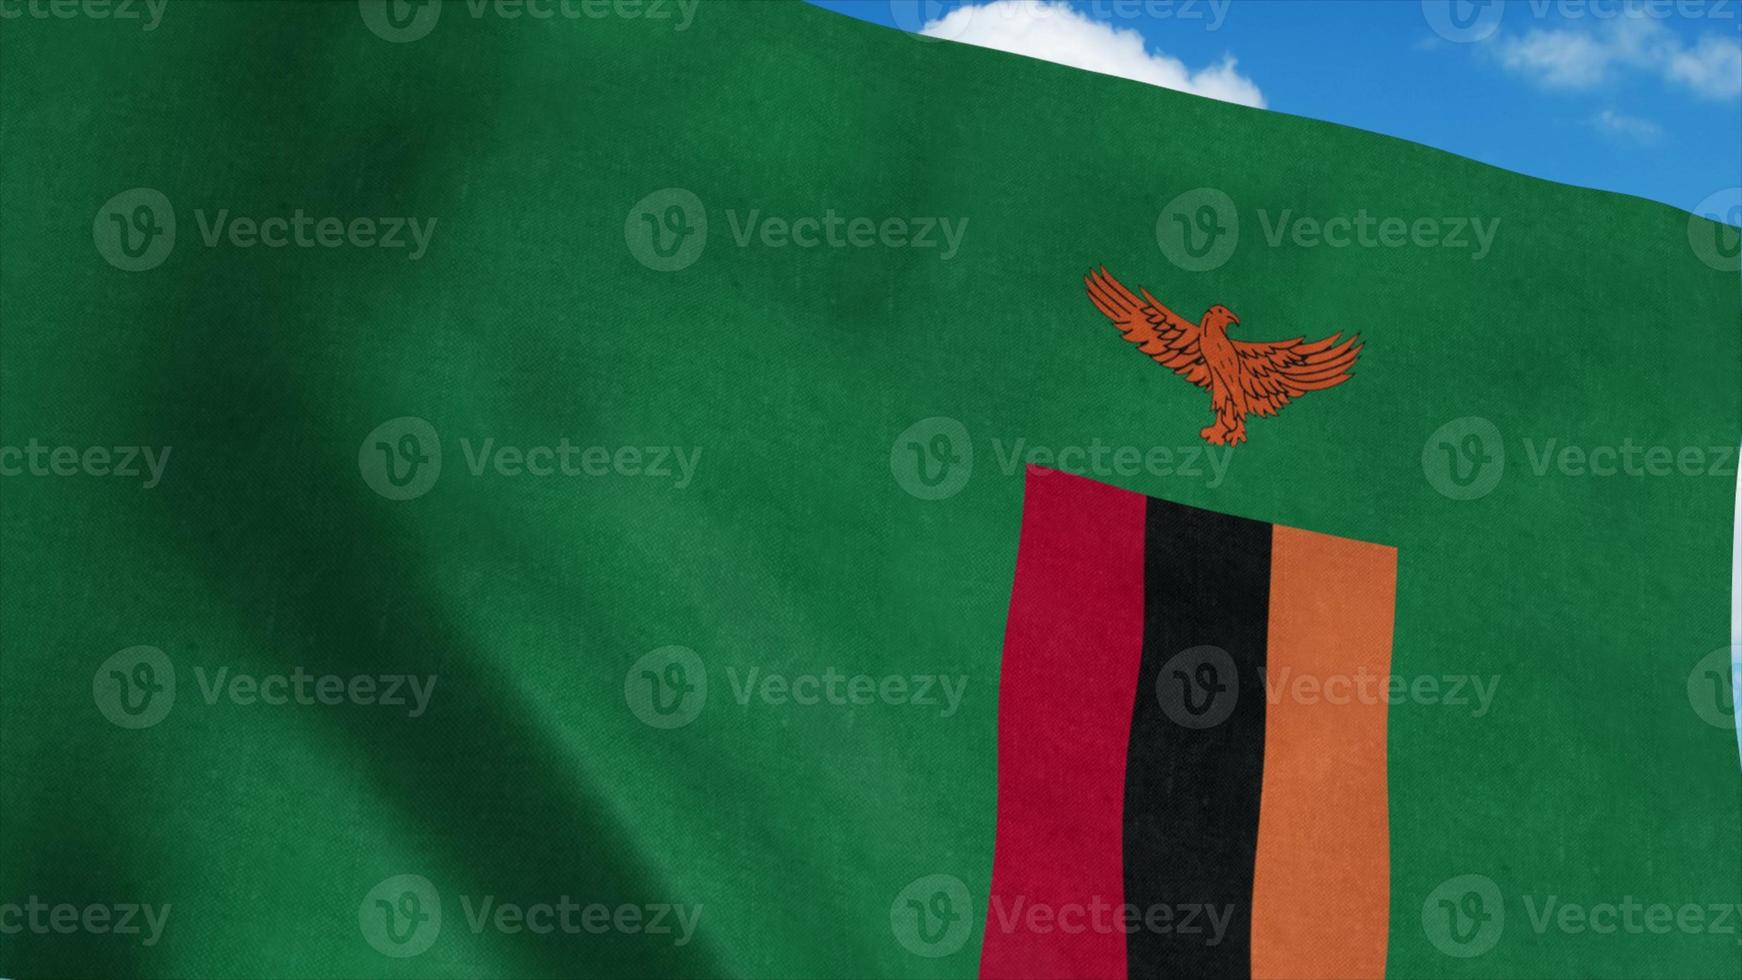 Zambia vlag op een vlaggenmast zwaaiend in de wind, blauwe hemelachtergrond. 3D-rendering foto